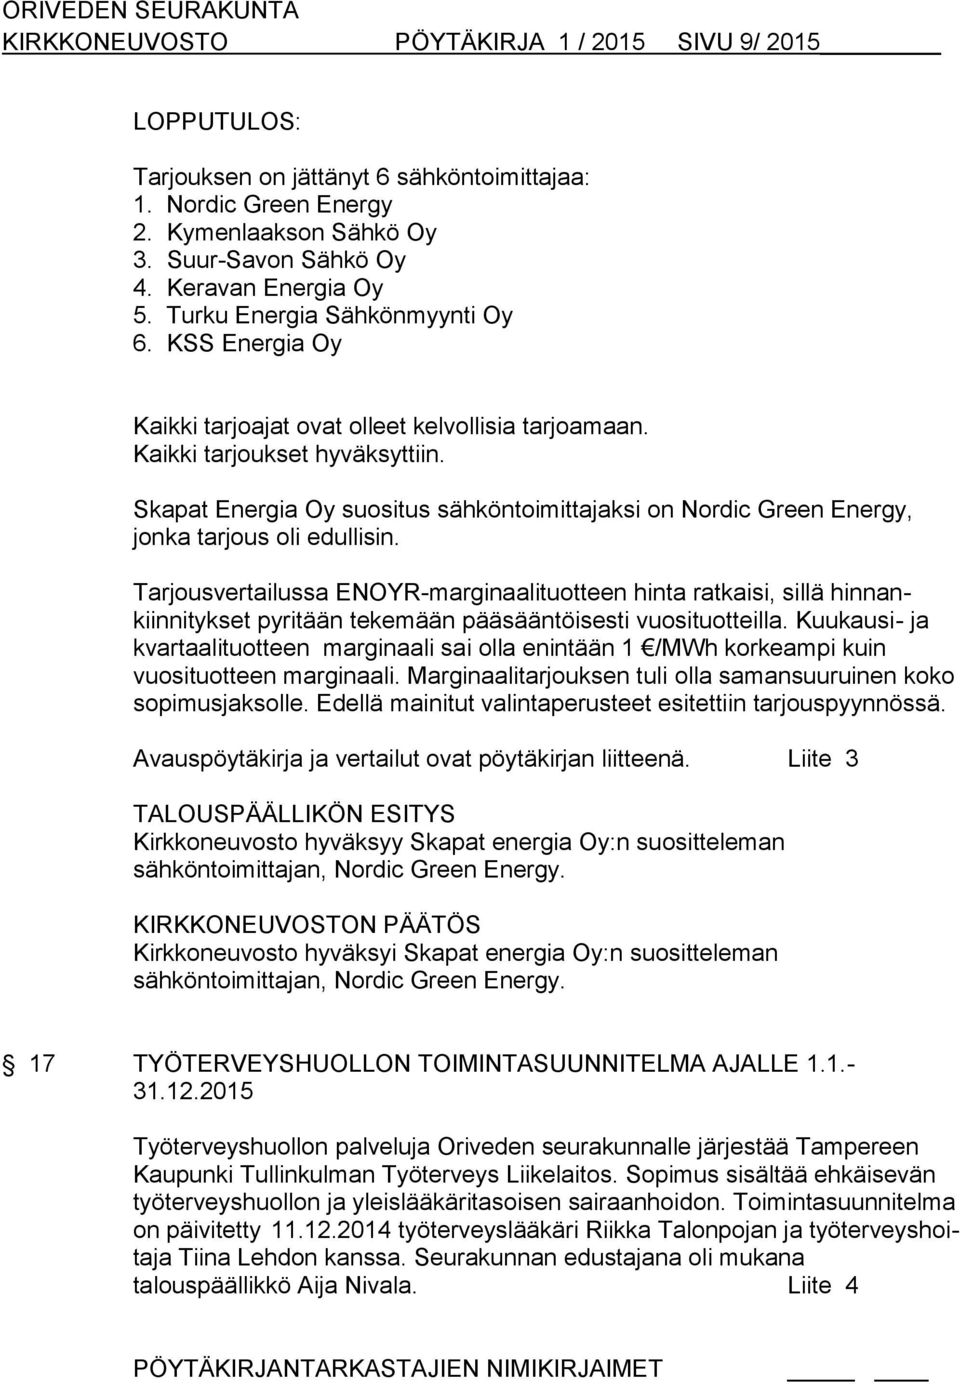 Skapat Energia Oy suositus sähköntoimittajaksi on Nordic Green Energy, jonka tarjous oli edullisin.